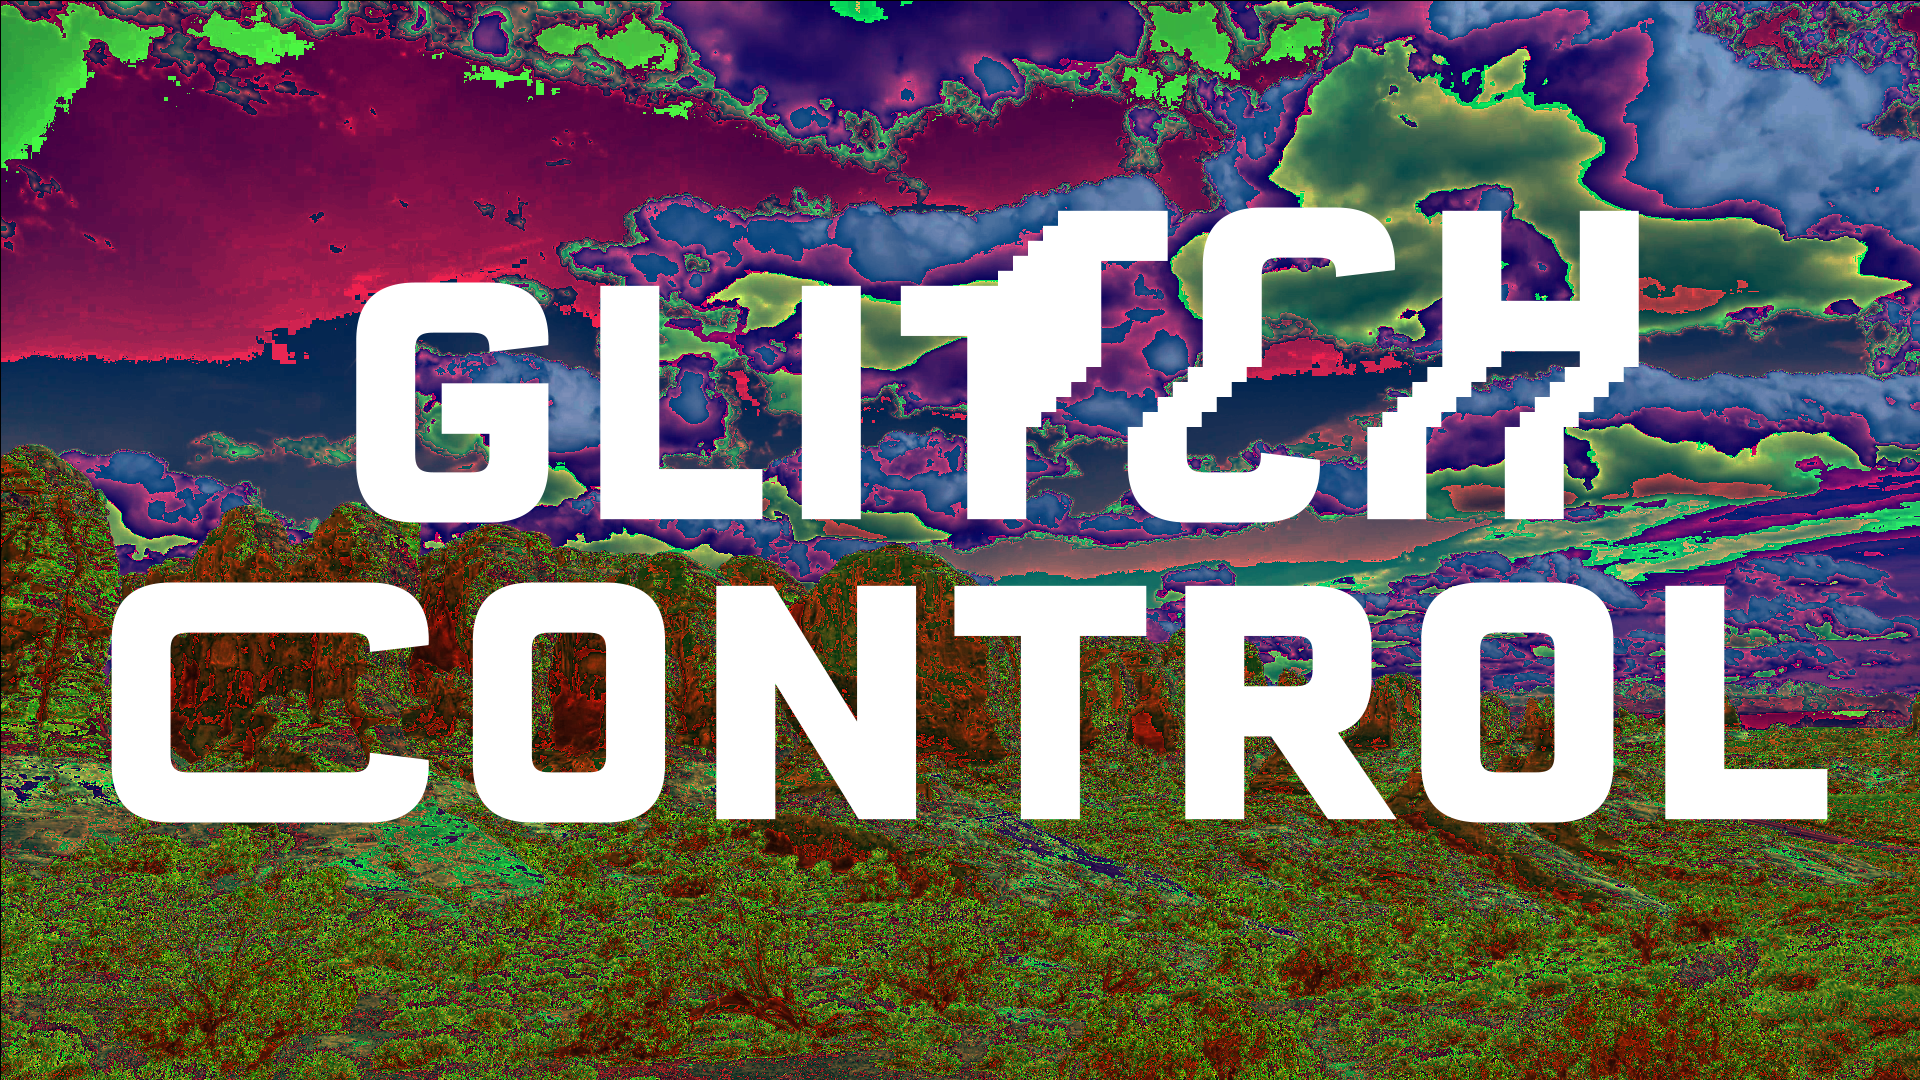 Glitch Control